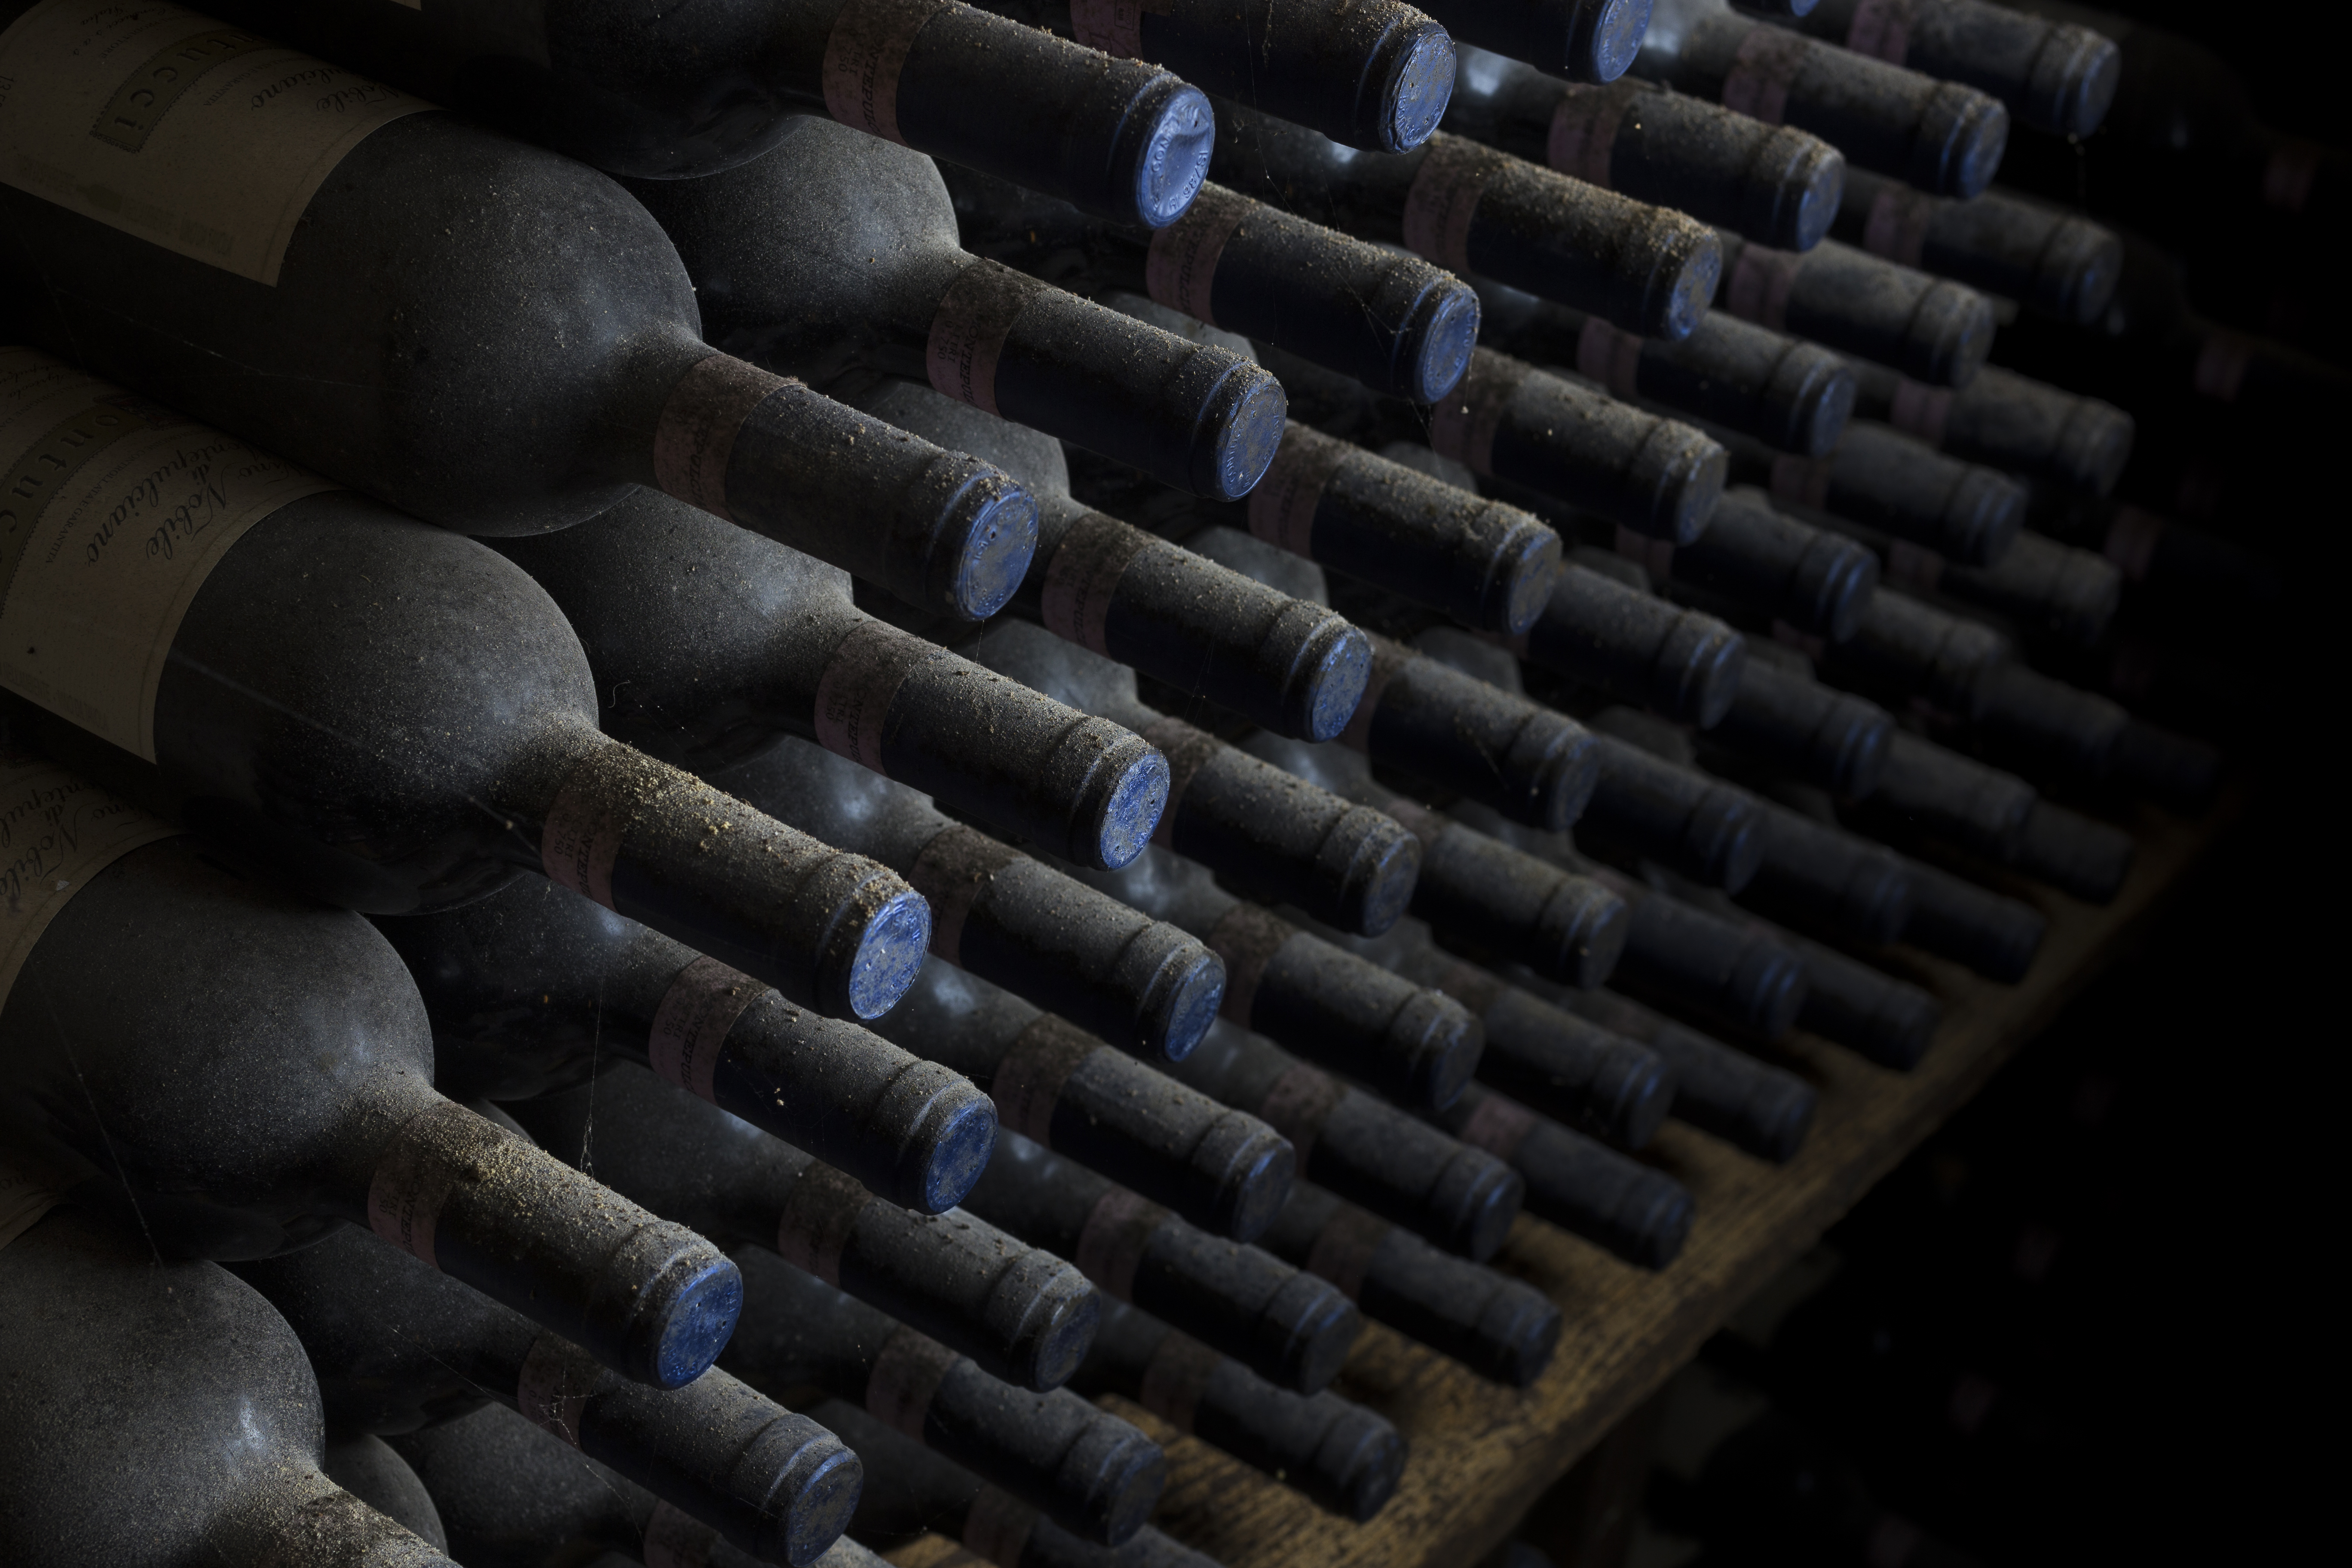 Immobili fin dall’imbottigliamento, i vini conservati in questa parte delle cantine conservano ancora intatti i sapori del loro tempo